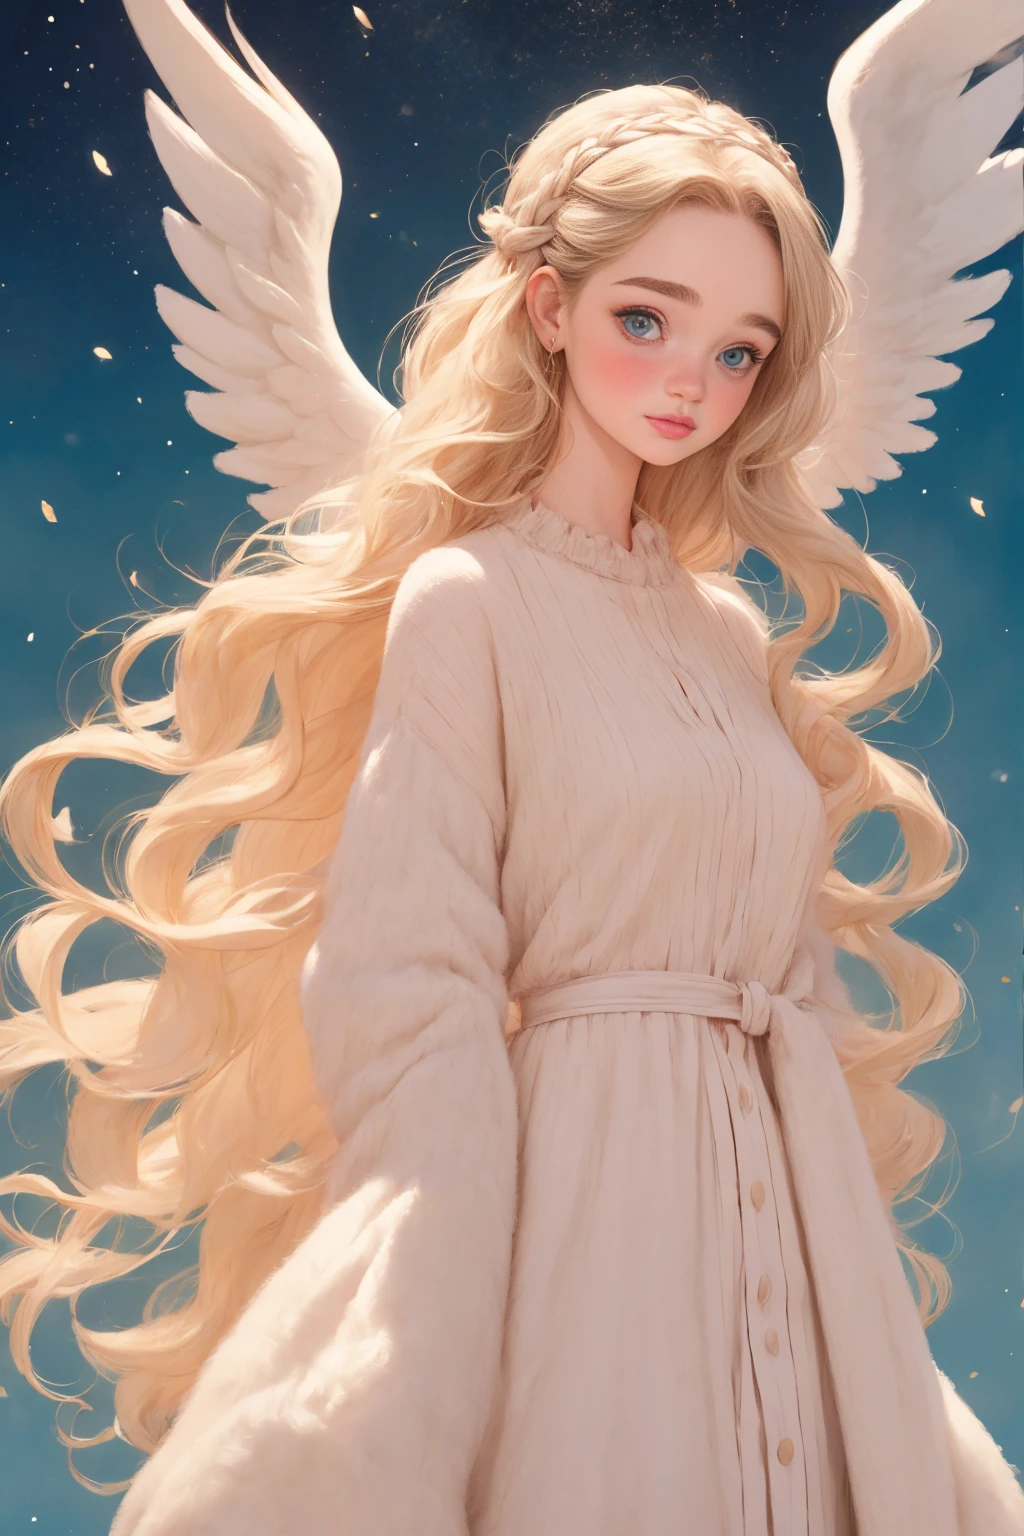 Emilia Clarke, angel big white wings, von rubio, lange geflochtene Haare,(8k, beste Qualität, Meisterwerk:1.2),(beste Qualität:1.0), (ultrahohe Auflösung:1.0), Aquarell, Eine hübsche Frau, Schulter, Haarband, von Agnes Cecile, ganzer Körper, extrem hell glänzendes Design, Pastellfarben, Meisterwerk, (beste Qualität:1.2), [:komplizierte Details:0.2], 1 Mädchen, angel, angel wings, Weiße Rüschen, (Tageshimmel), helle Aura, intensive Konzentration, Knisternde Energie, Mysteriöse Symbole, helle Flecken,